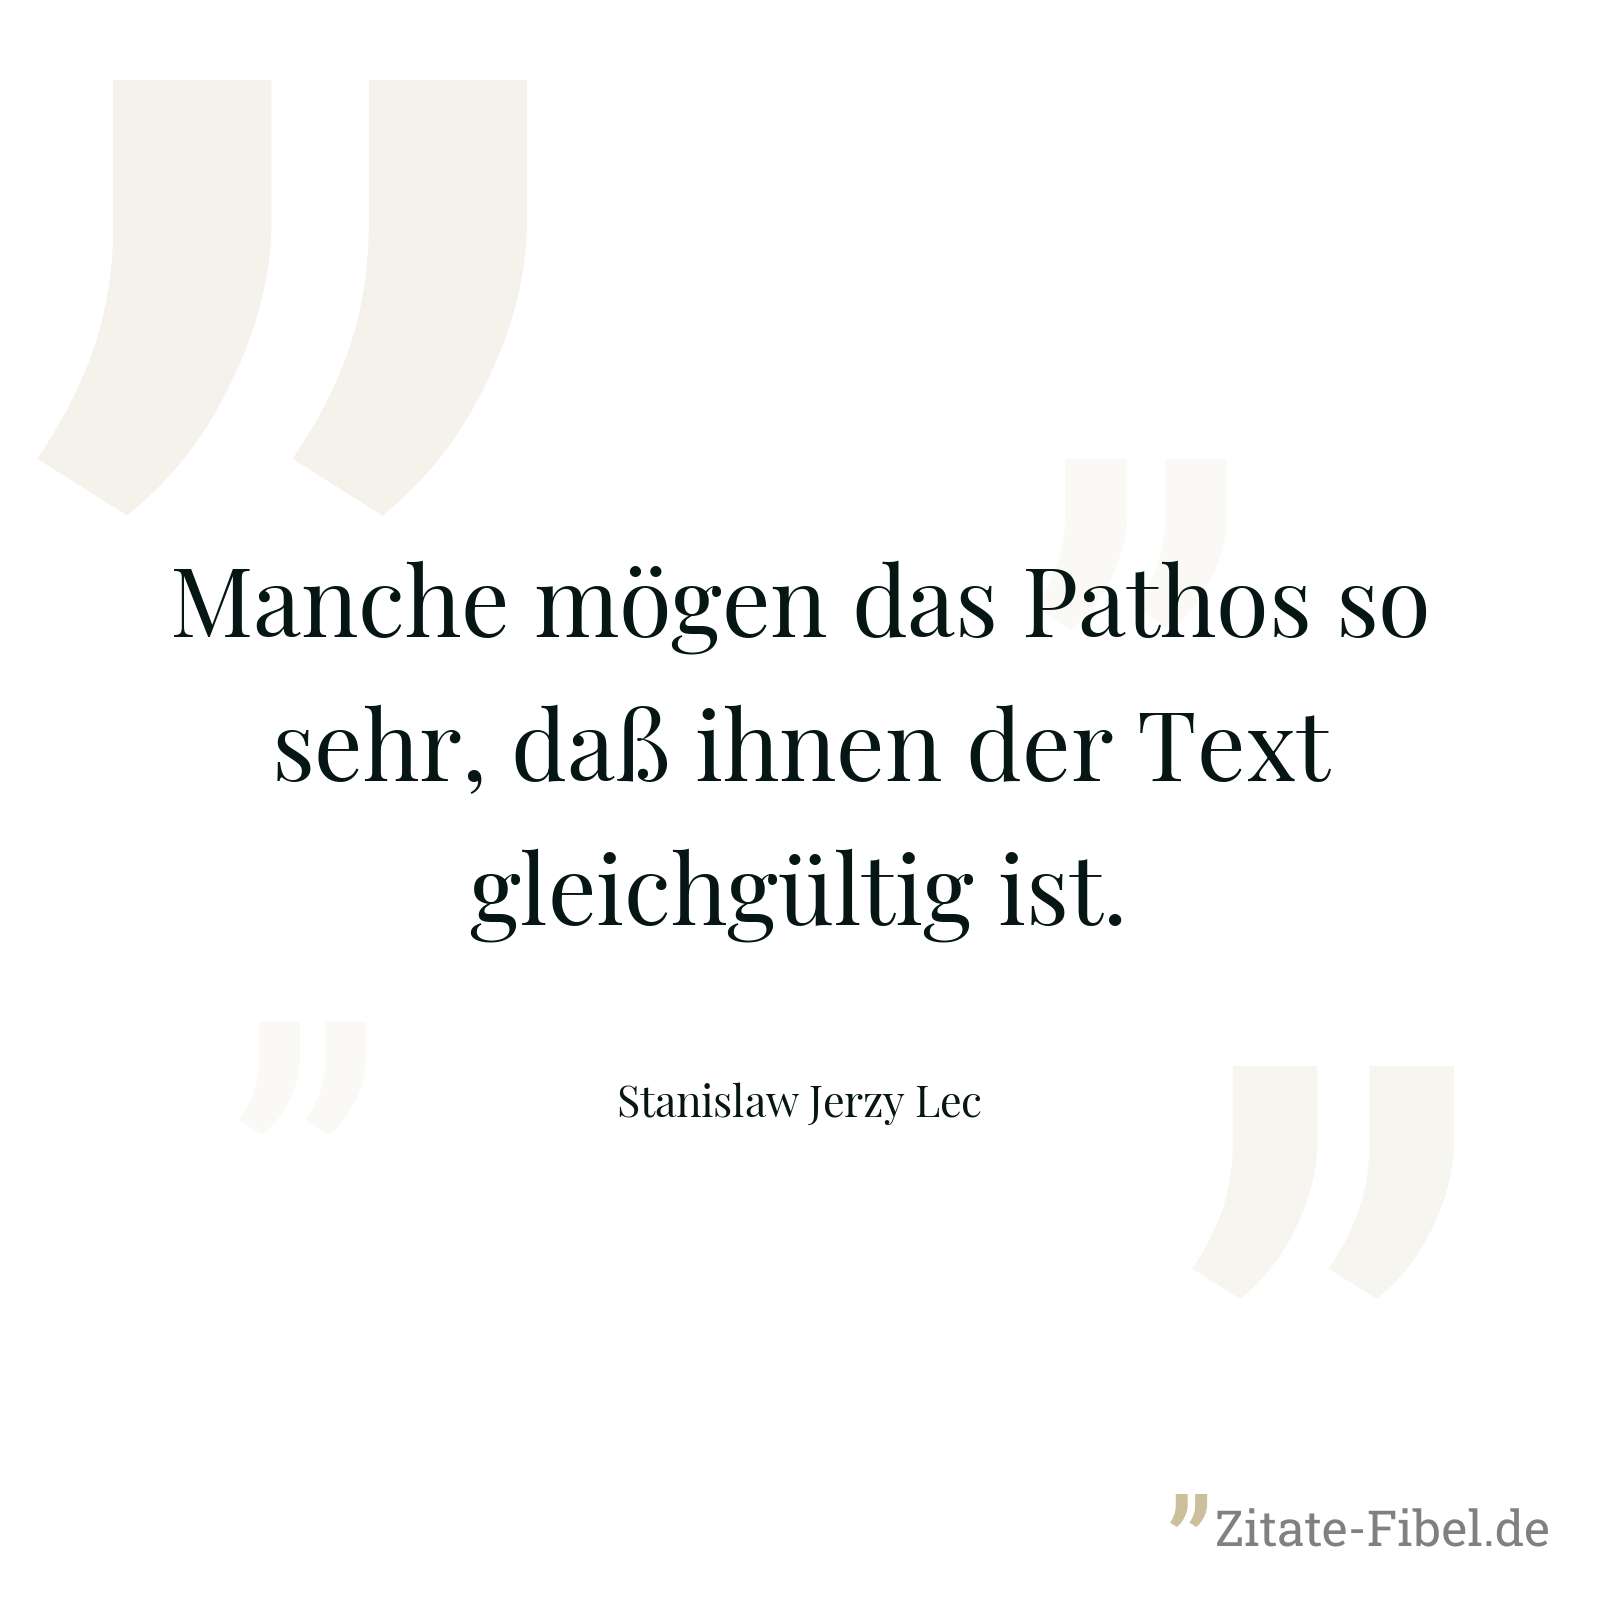 Manche mögen das Pathos so sehr, daß ihnen der Text gleichgültig ist. - Stanislaw Jerzy Lec